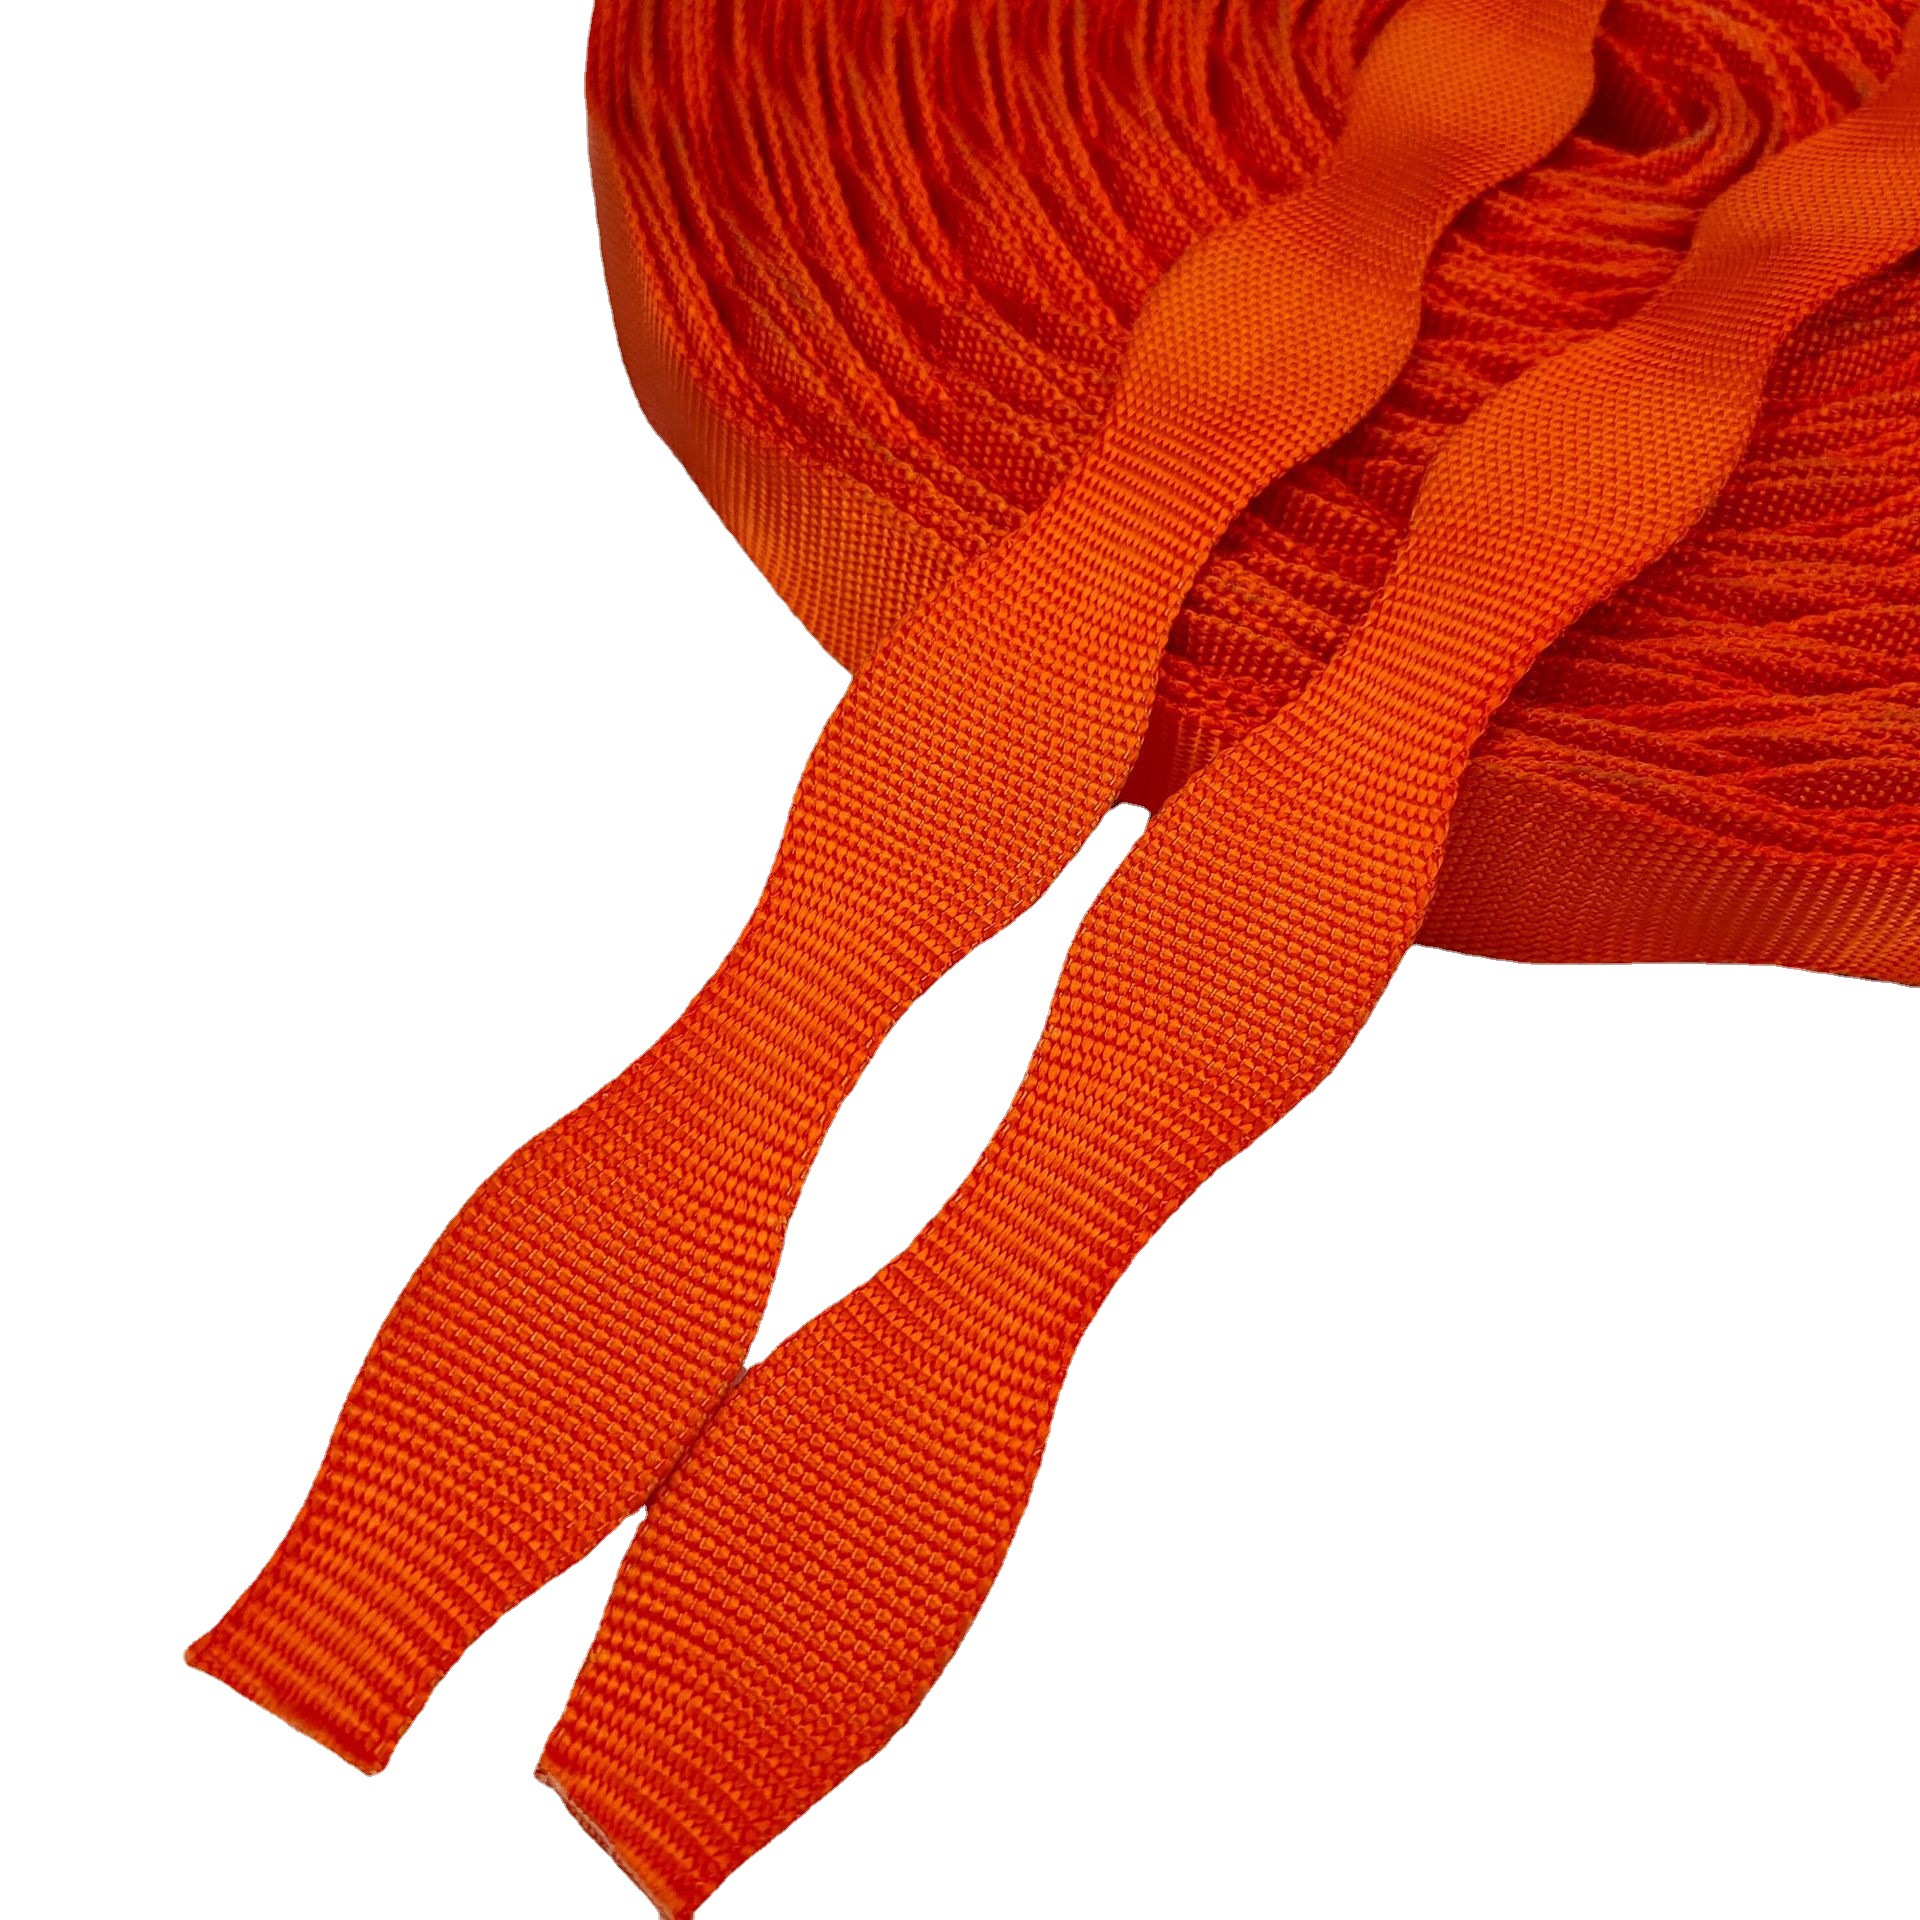 广州市海扬织带厂真尼龙葫芦带橙色2.5厘米宽蛇纹宽窄带2.5cm橘色